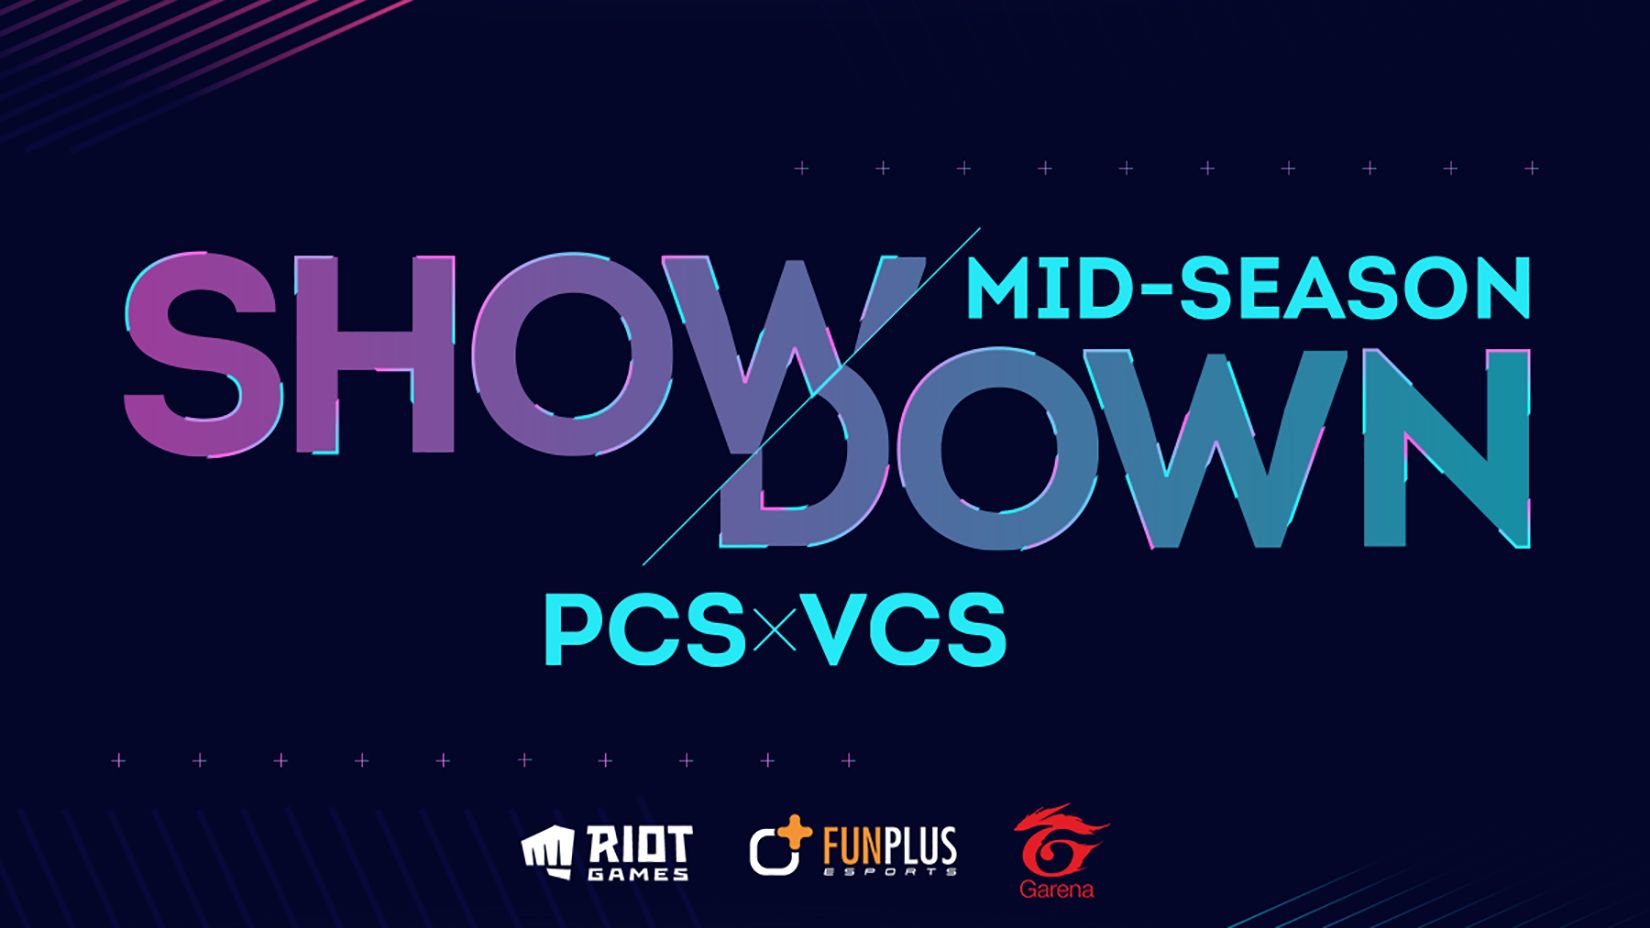 Công bố lịch thi đấu giải giao hữu Mid-Season Showdown 2020 giữa VCS và PCS